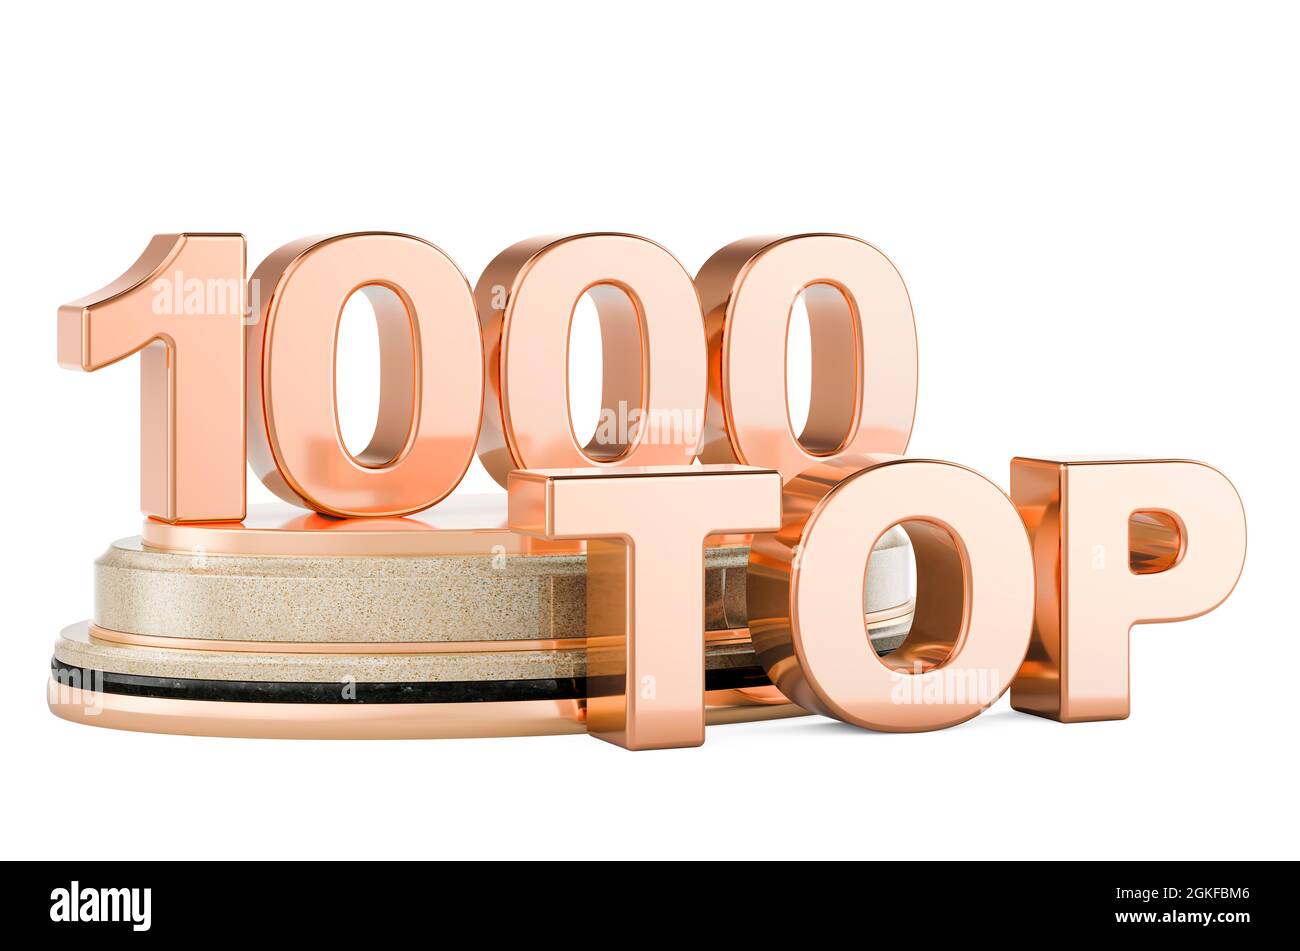 Top 1000, premio podio. Rendering 3D isolato su sfondo bianco Foto Stock